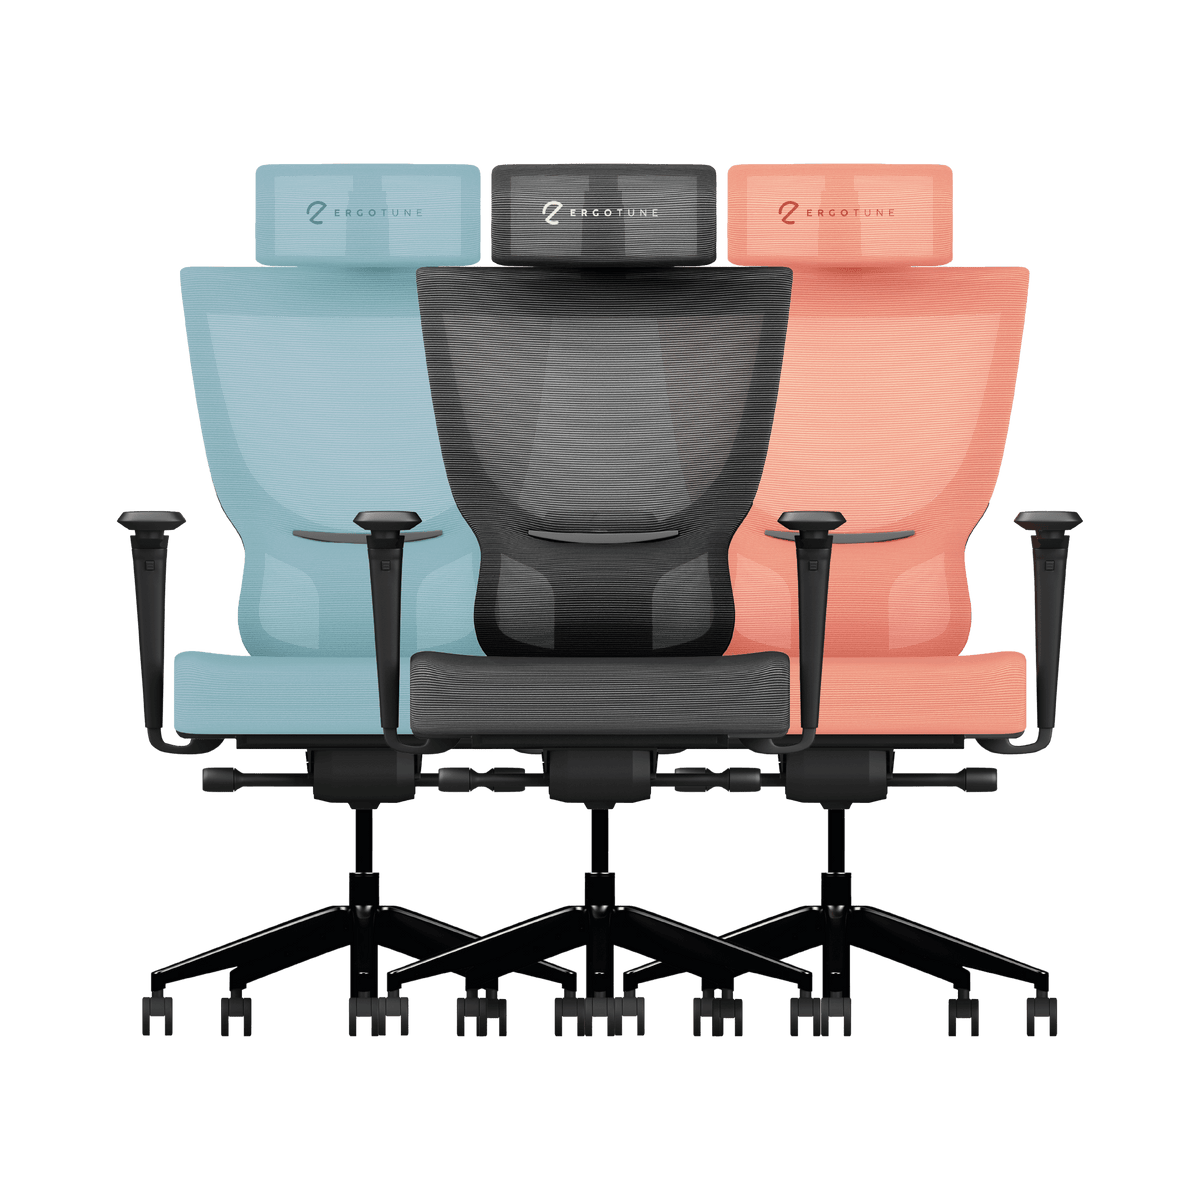 Ergotune Supreme Ergonomic Chair